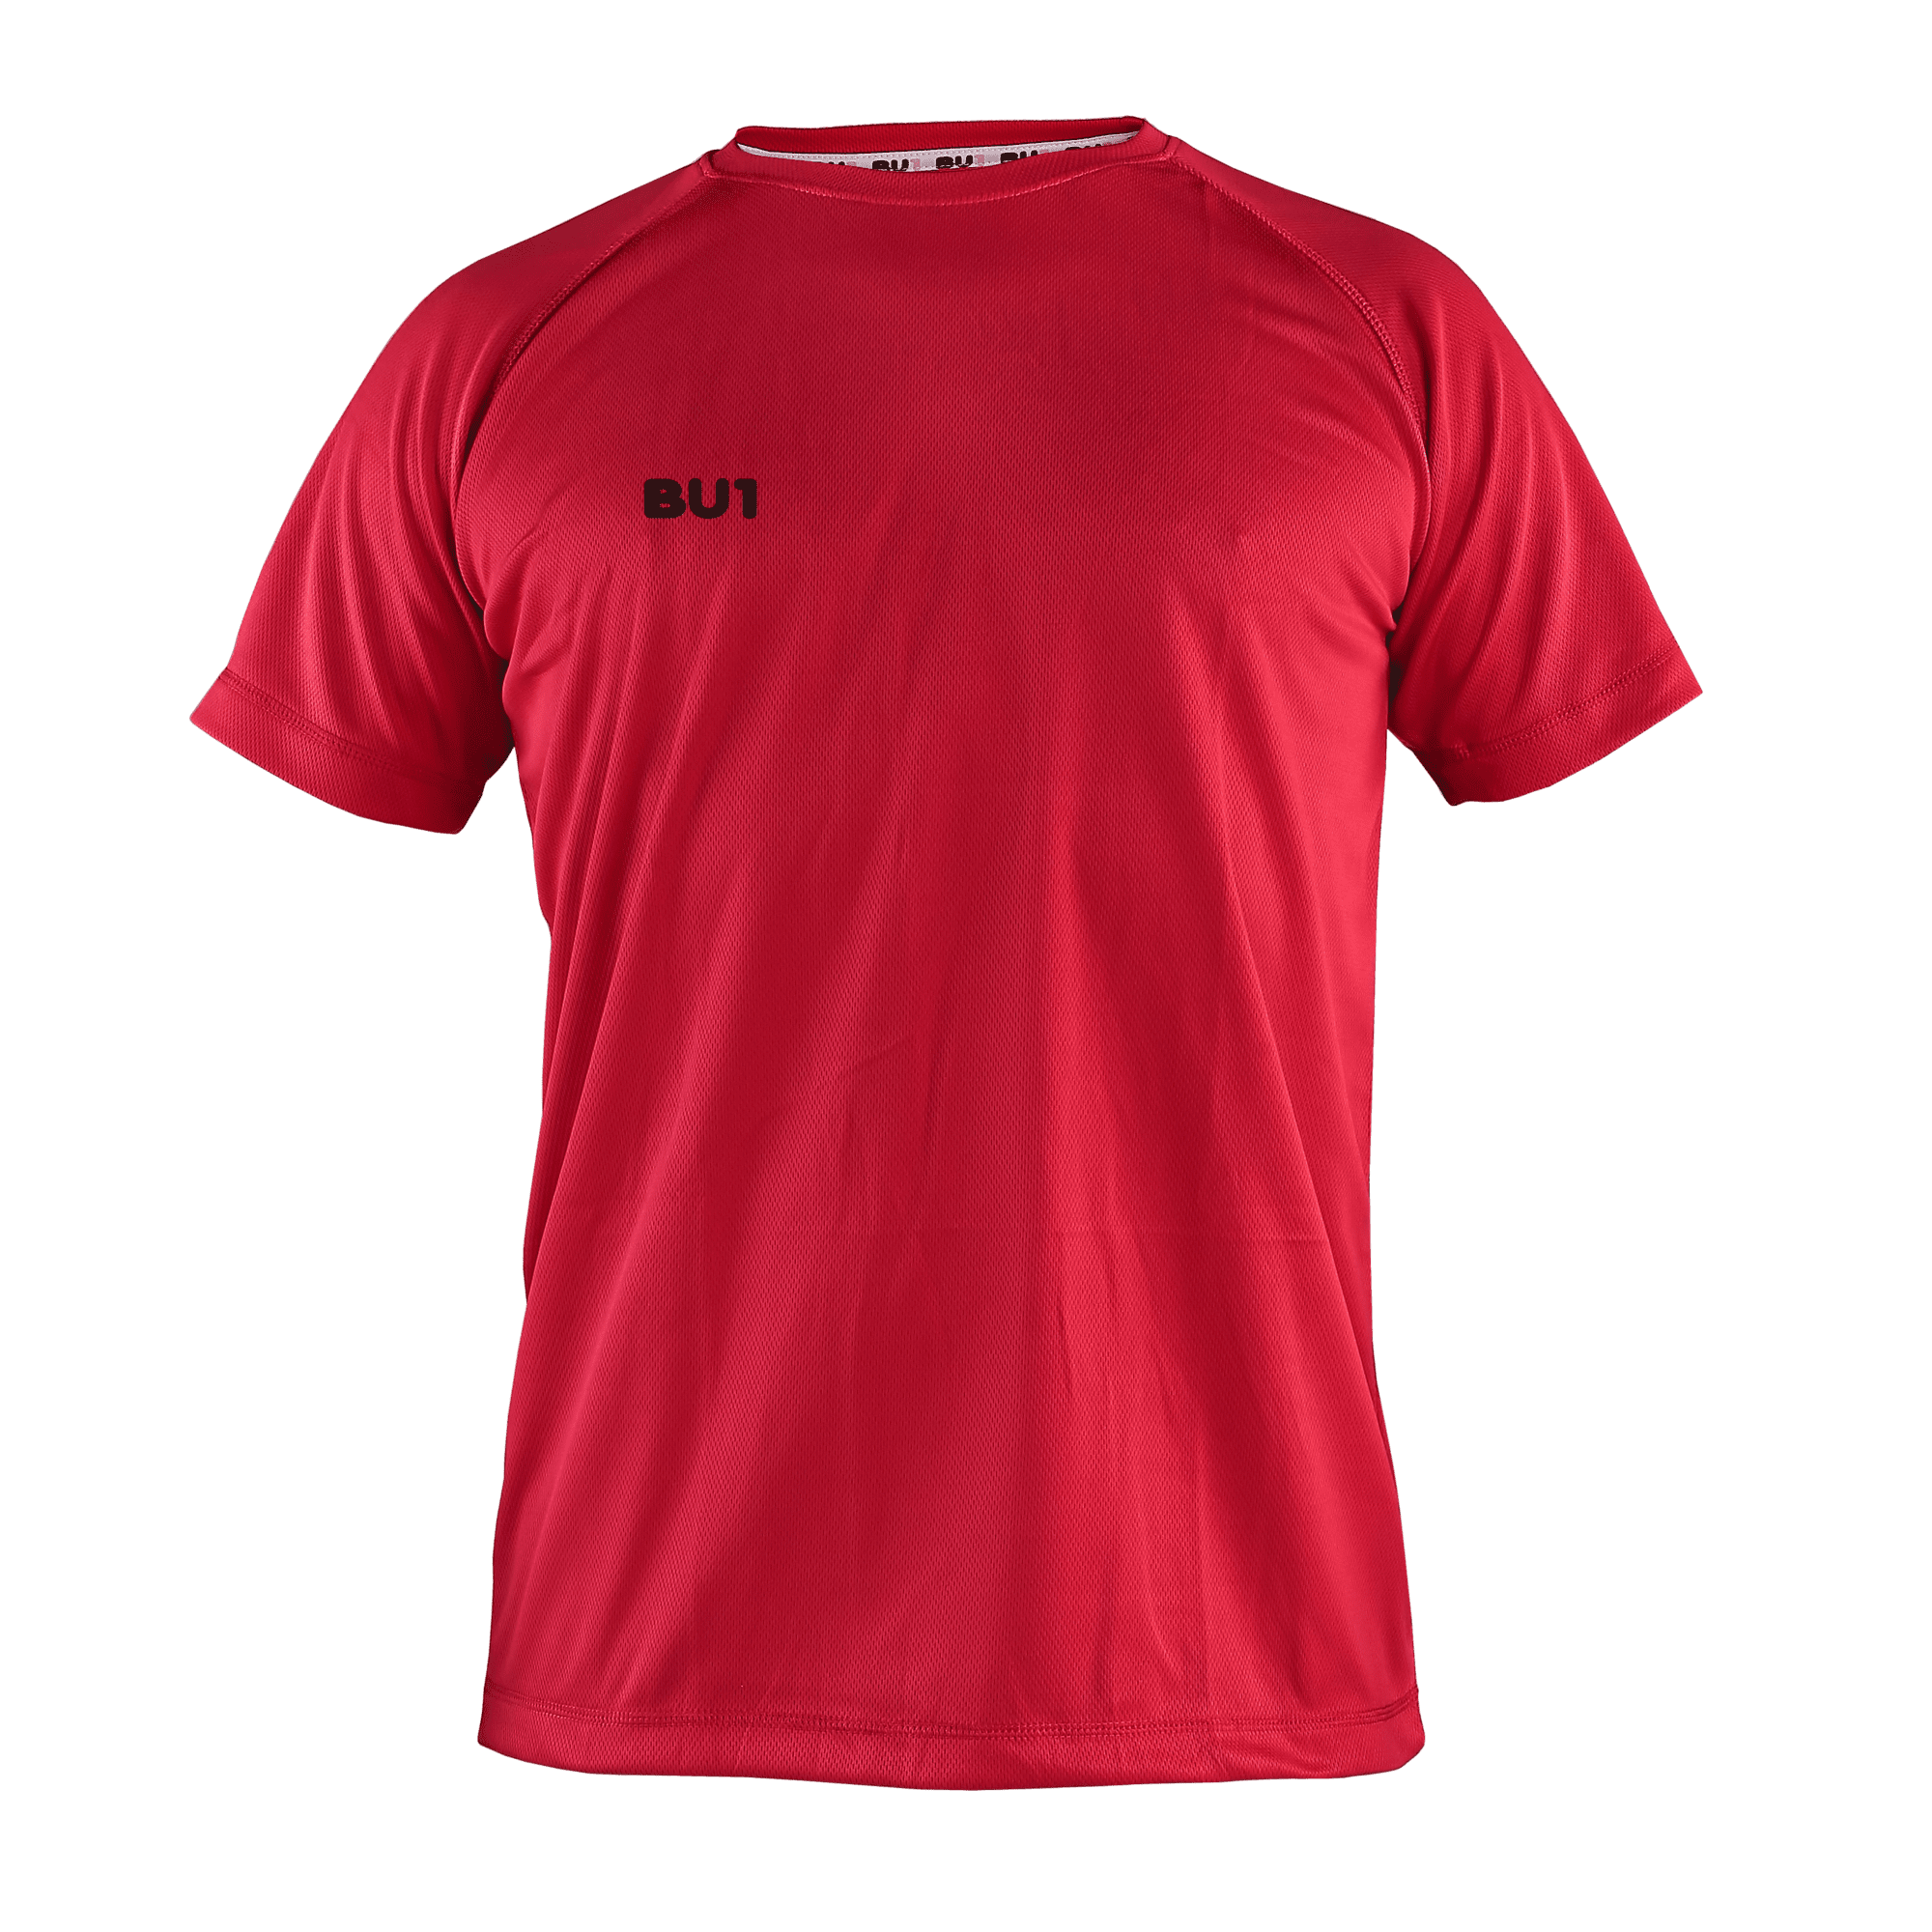 BU1 tréninkové tričko červené